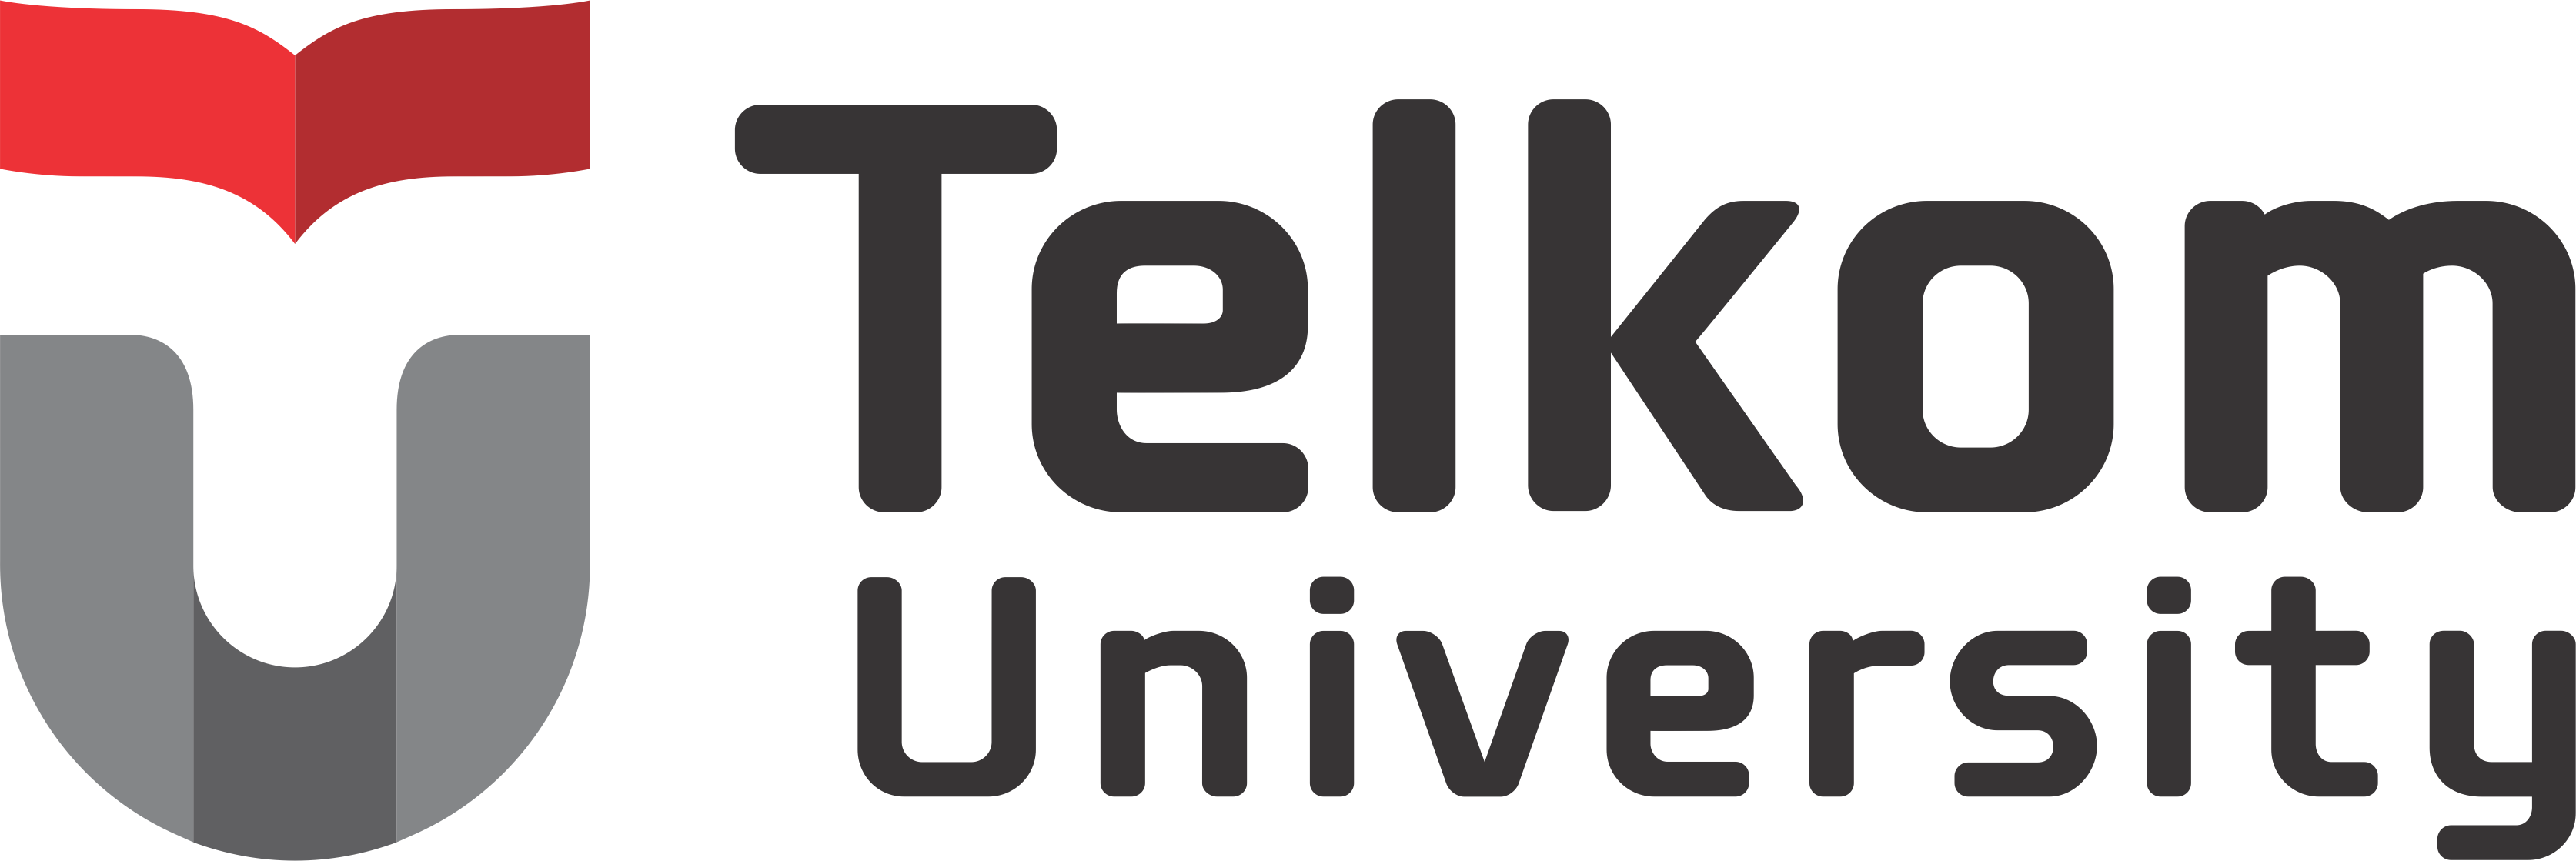 1.-Logo-Telkom-University-Konfigrasi-2-Baris